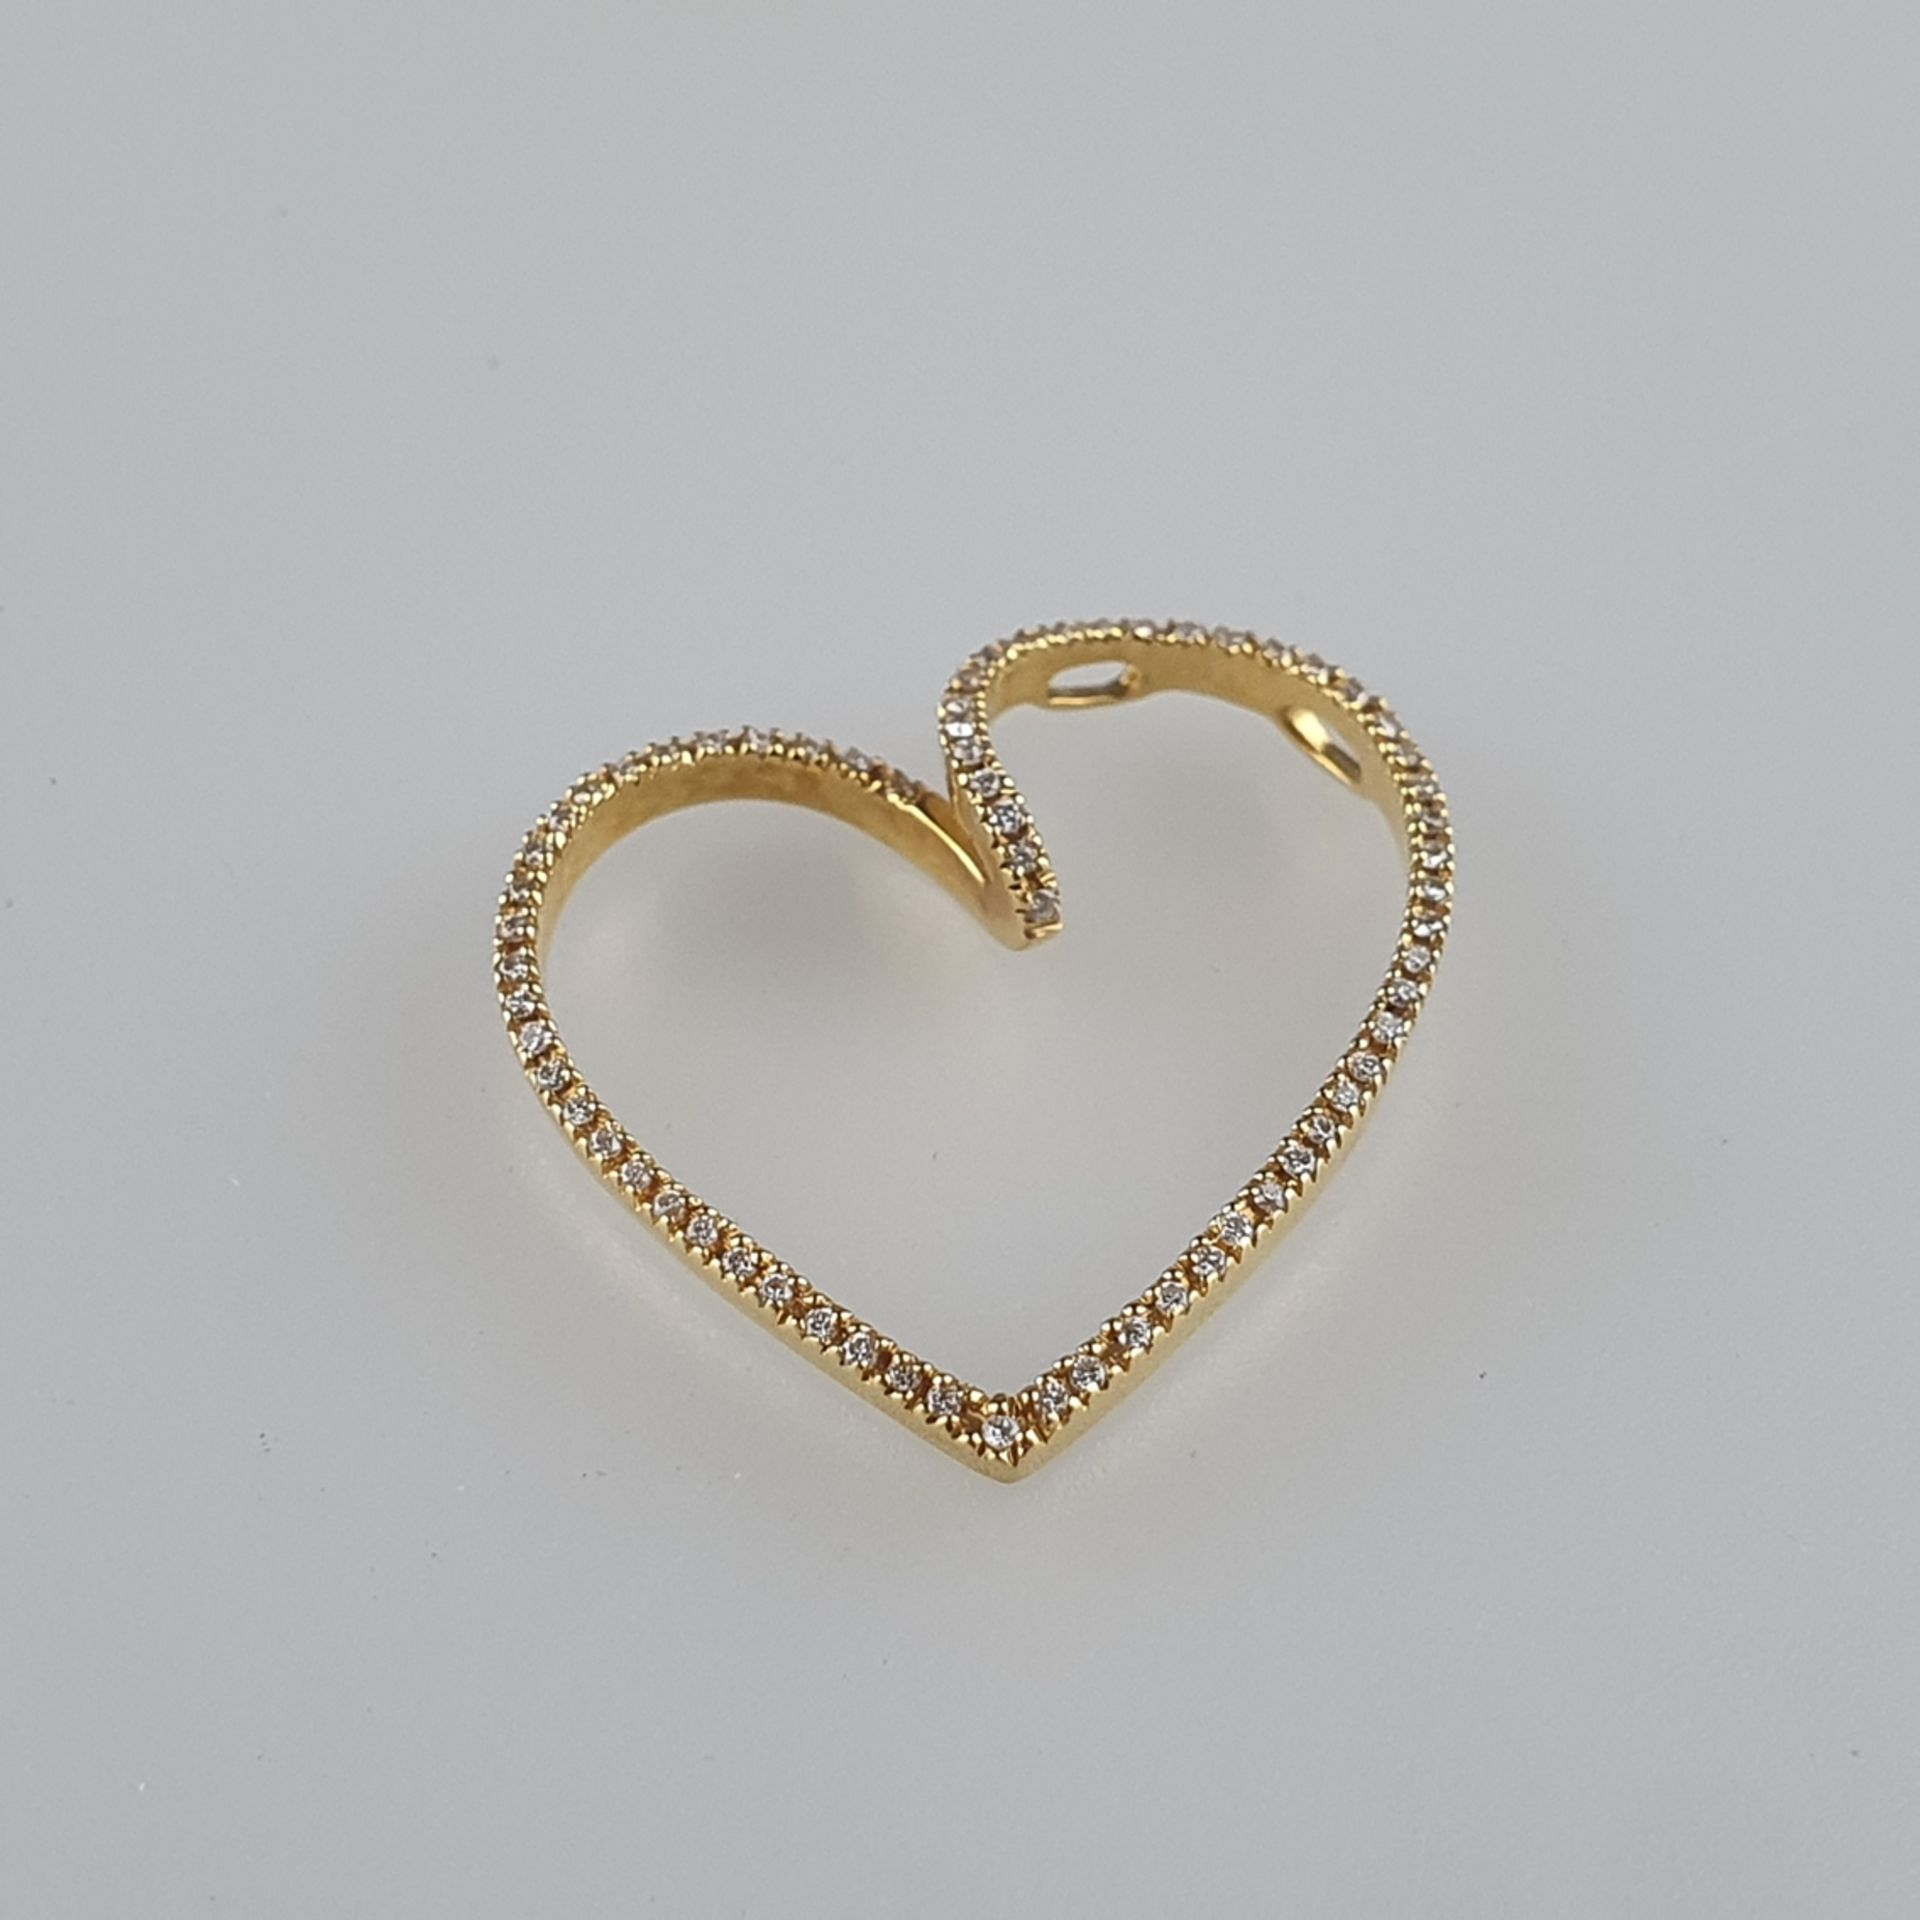 Diamantanhänger in Herzform - Gelbgold 750/000 (18 K), innen gestempelt „750“ „griechischer Buchsta - Bild 2 aus 5